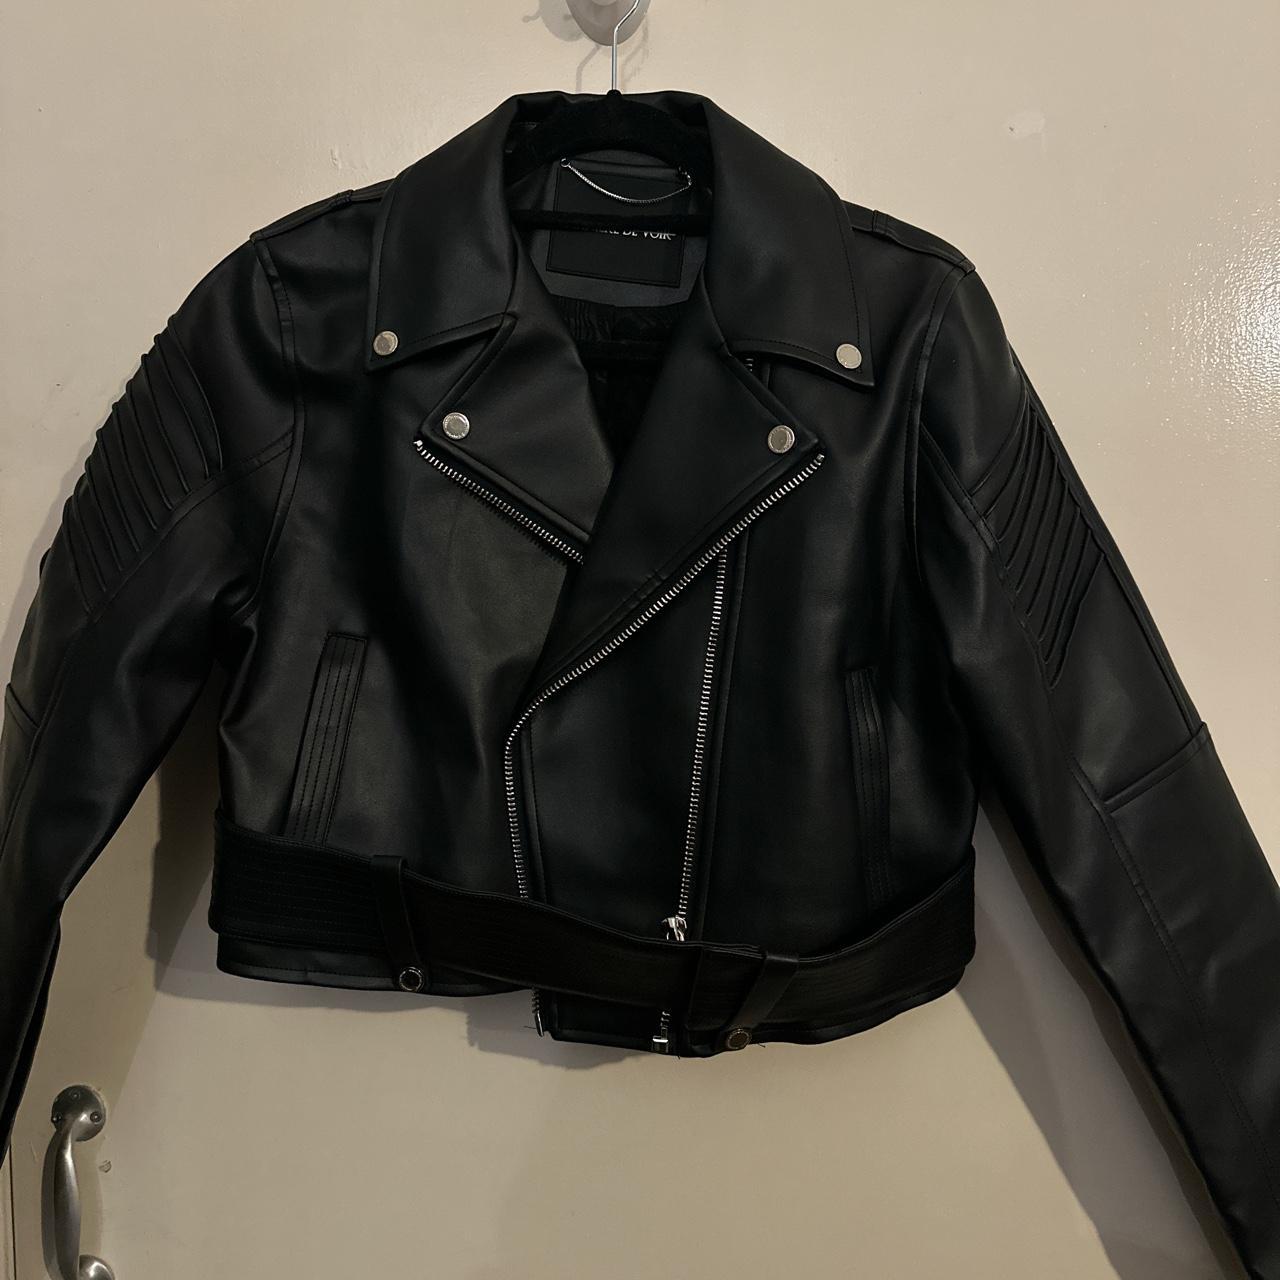 Maniere de voir leather jacket vegan - Depop